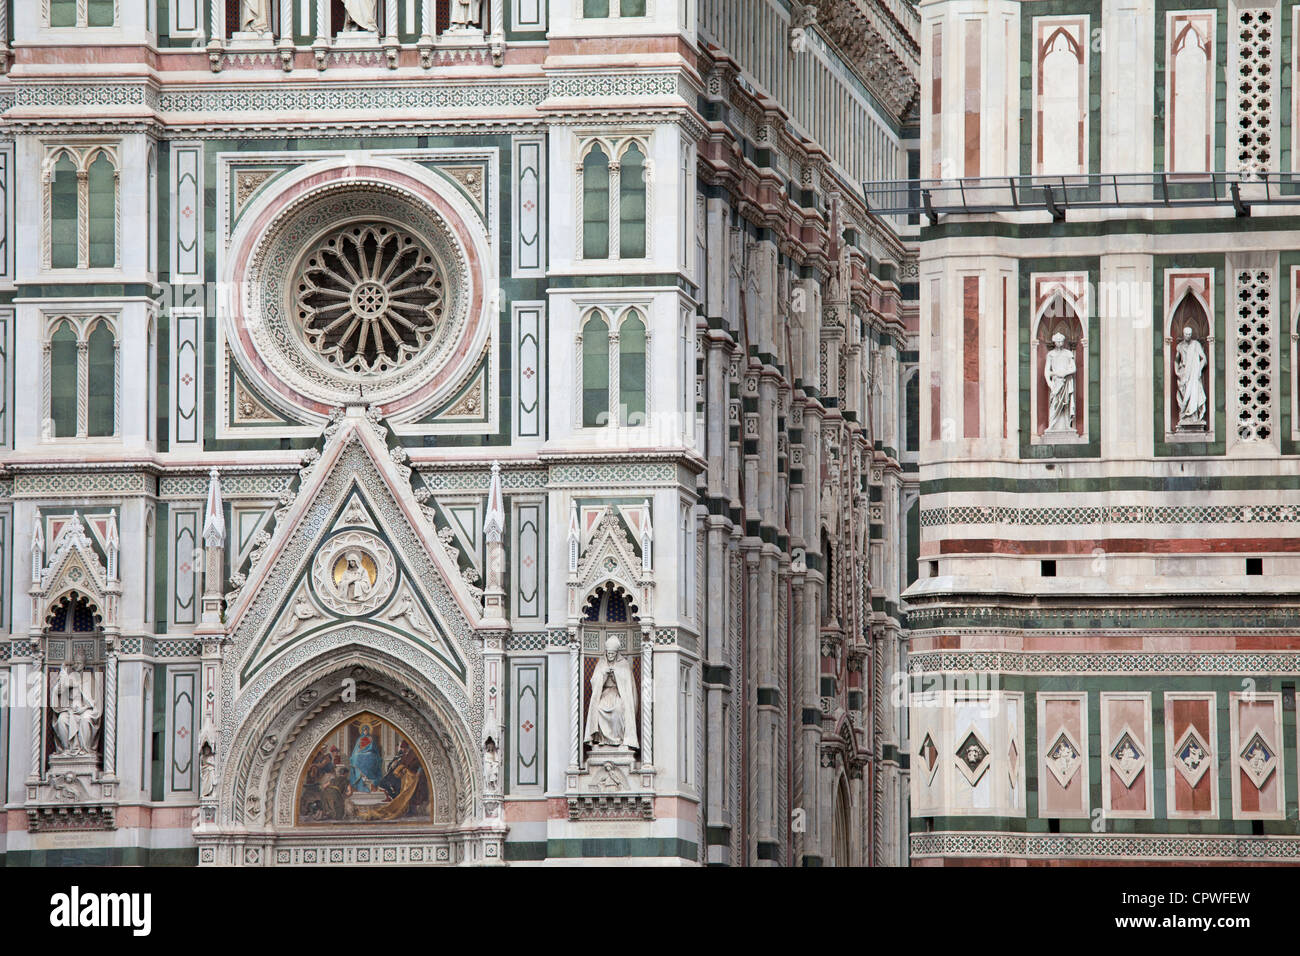 Il duomo di Firenze Duomo di Firenze e il campanile Torre campanaria in piazza di san giovanni, Toscana, Italia Foto Stock